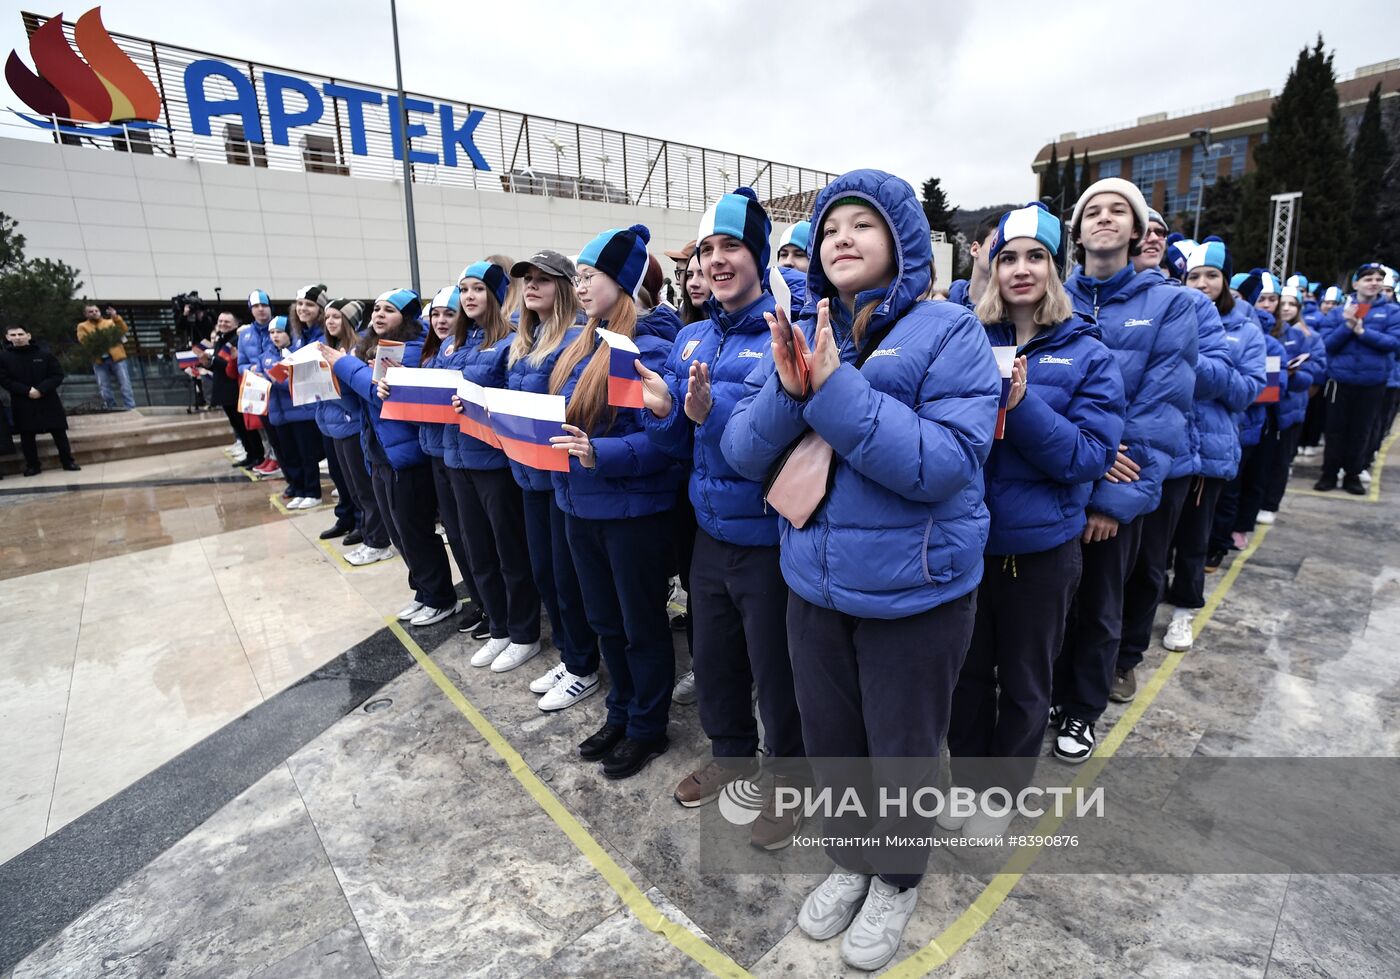 Празднование девятой годовщины воссоединения Крыма с Россией в МДЦ "Артек"